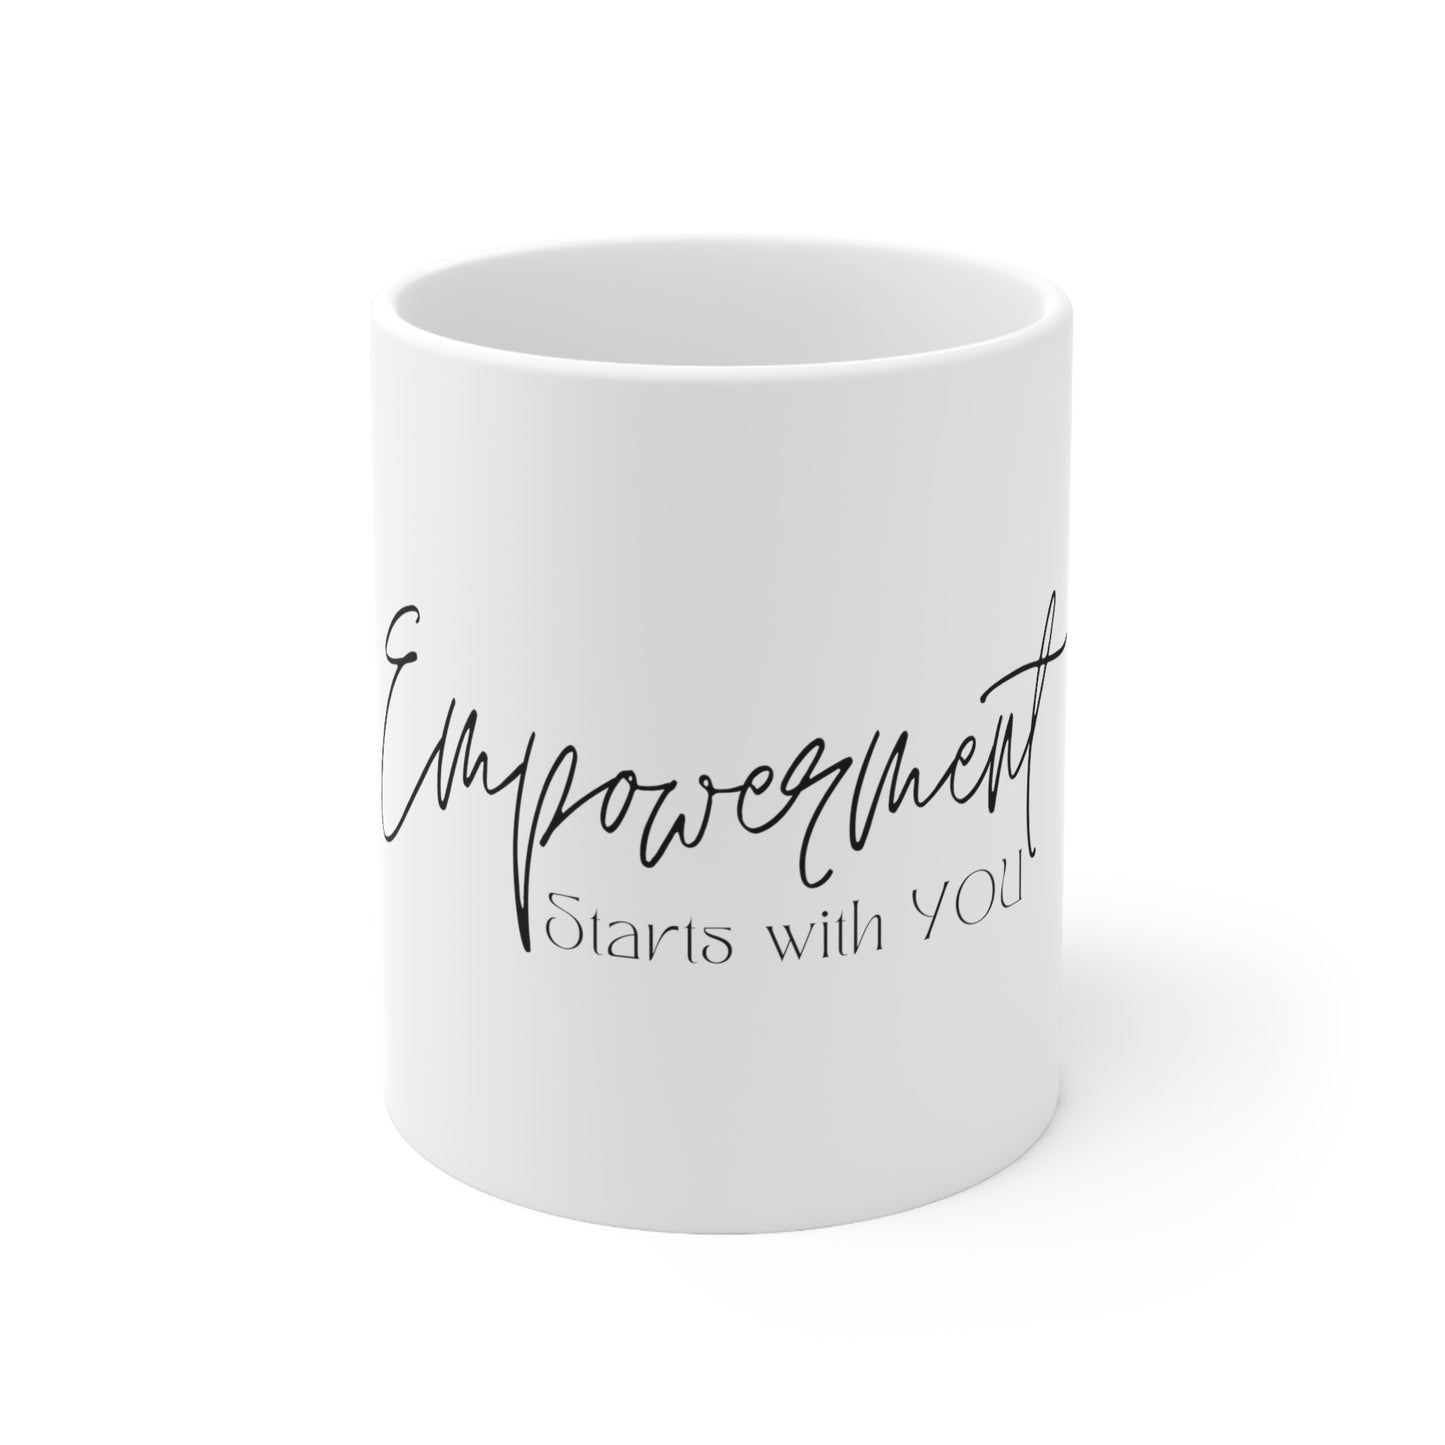 Empowerment Starts with YOU Ceramic Mug, 11oz